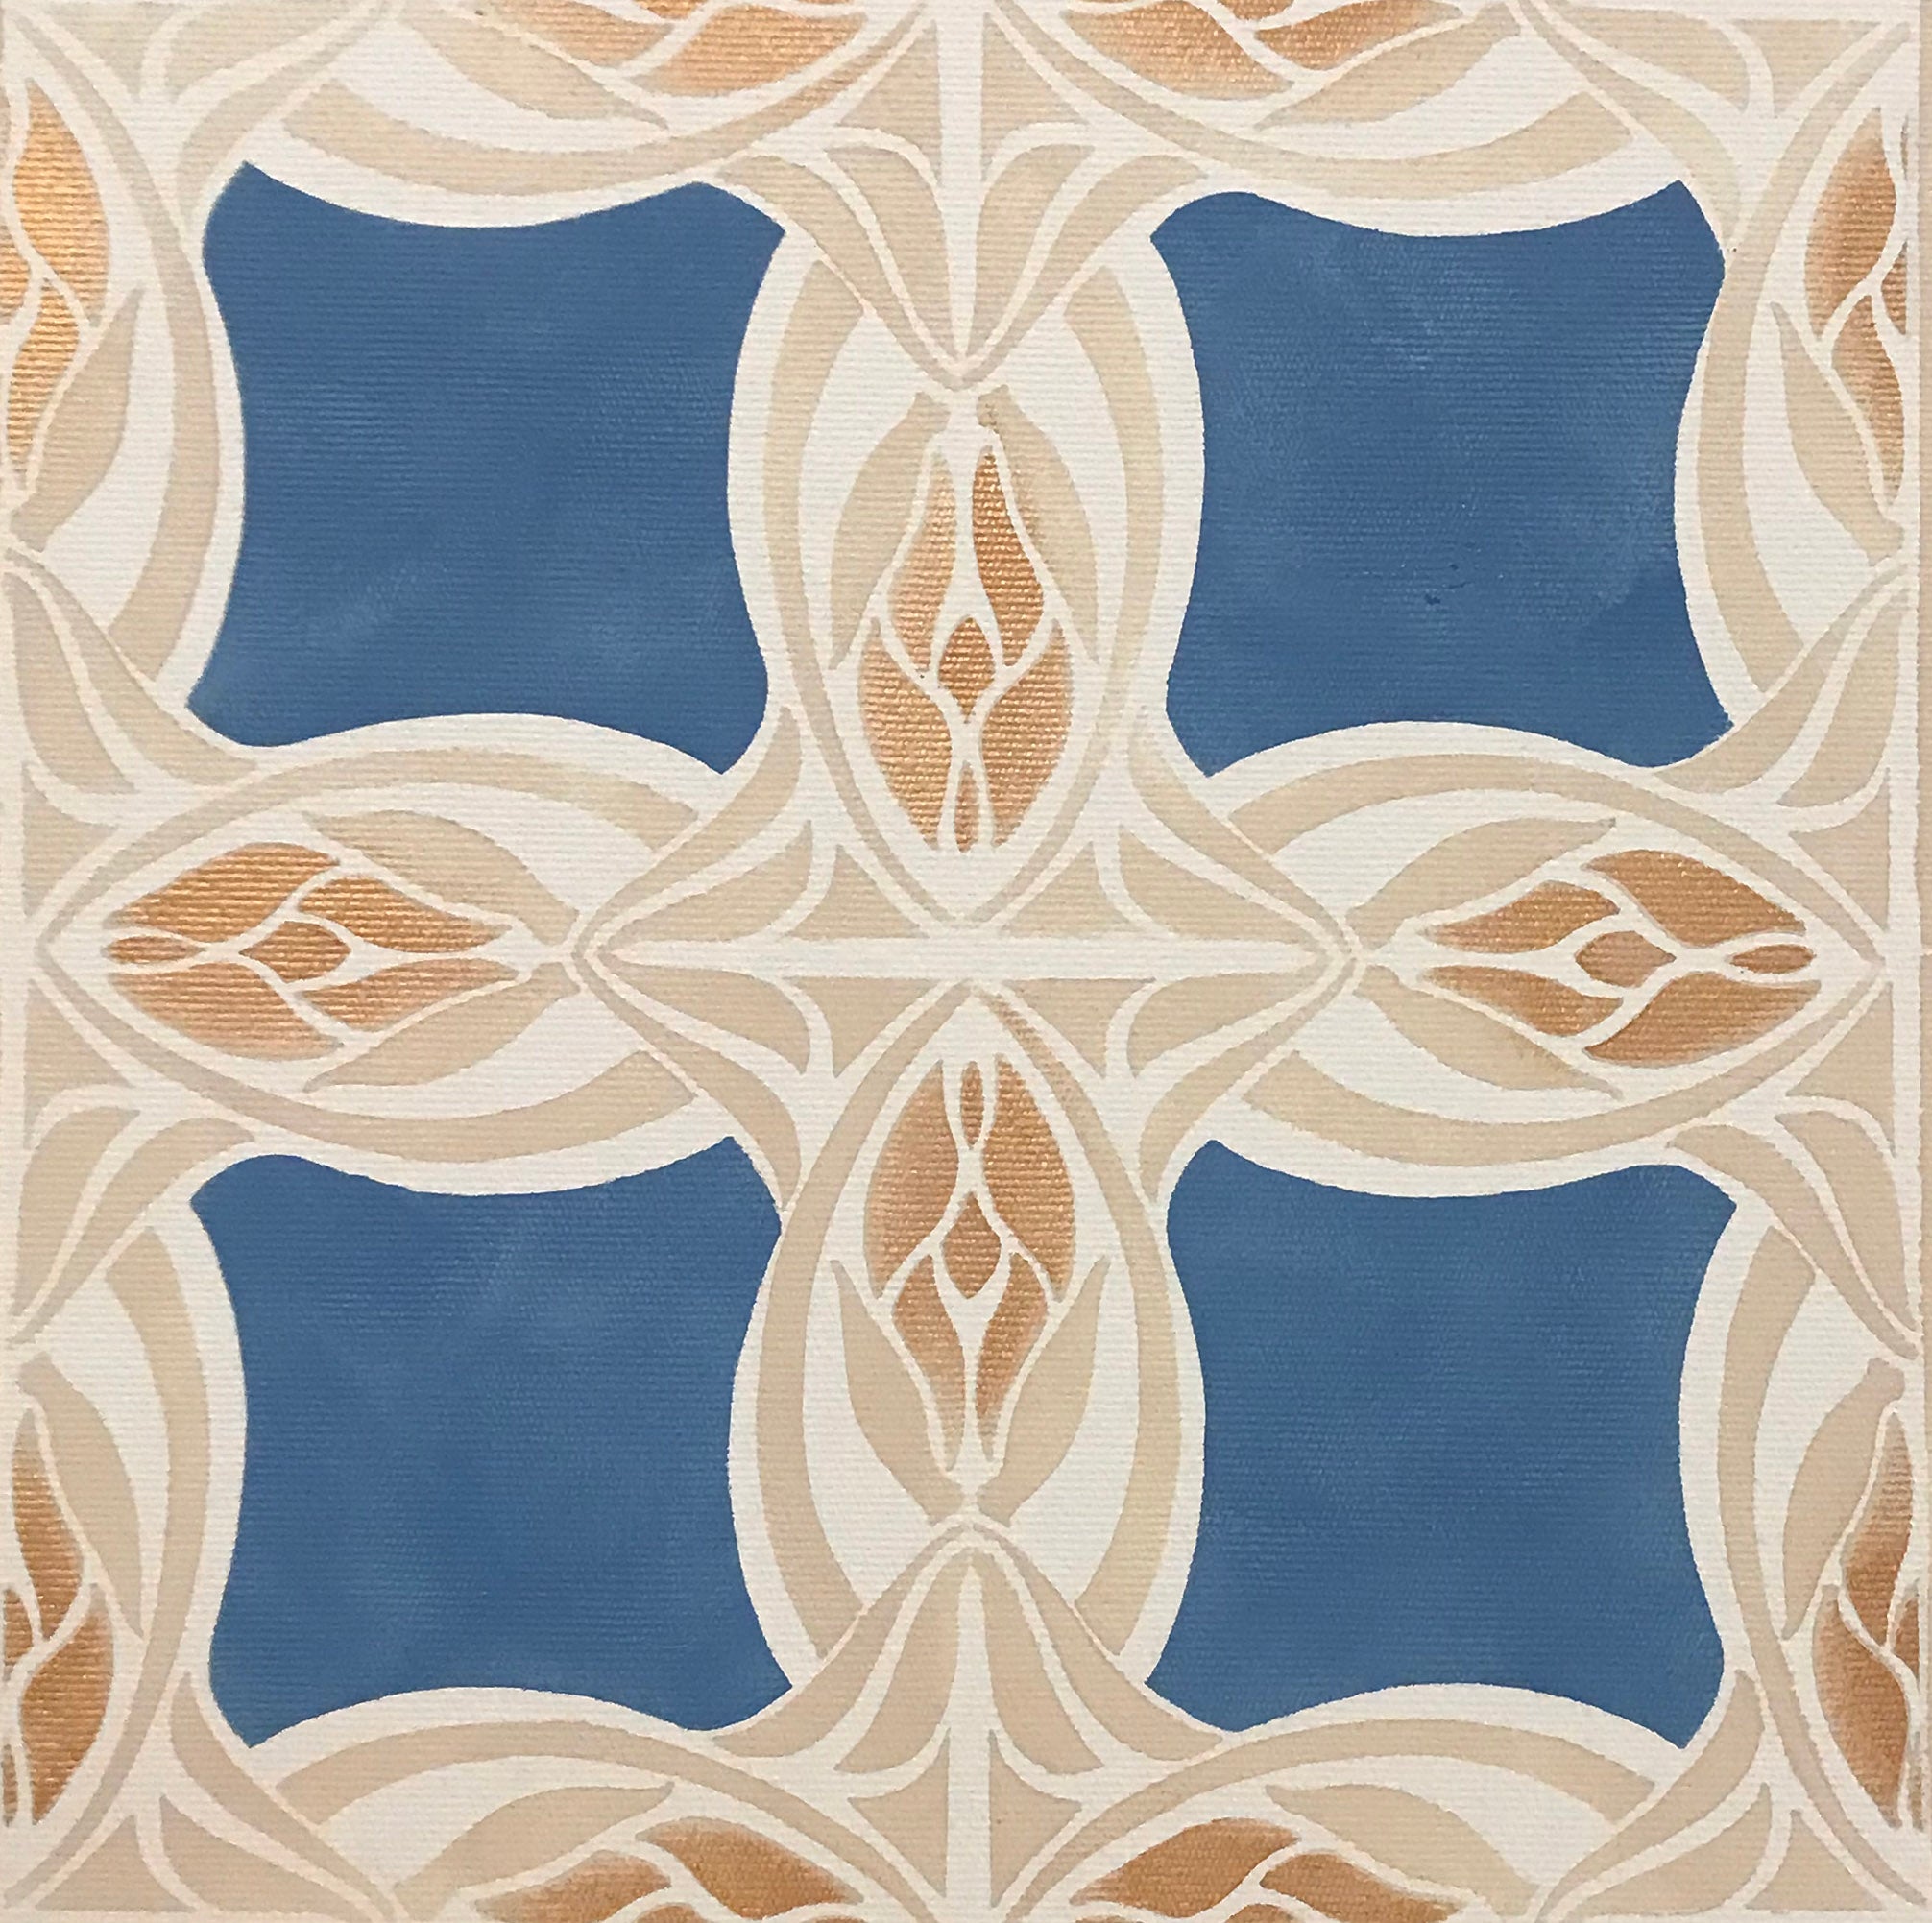 Close up of center motifs of Wunderlich Floorcloth #6.